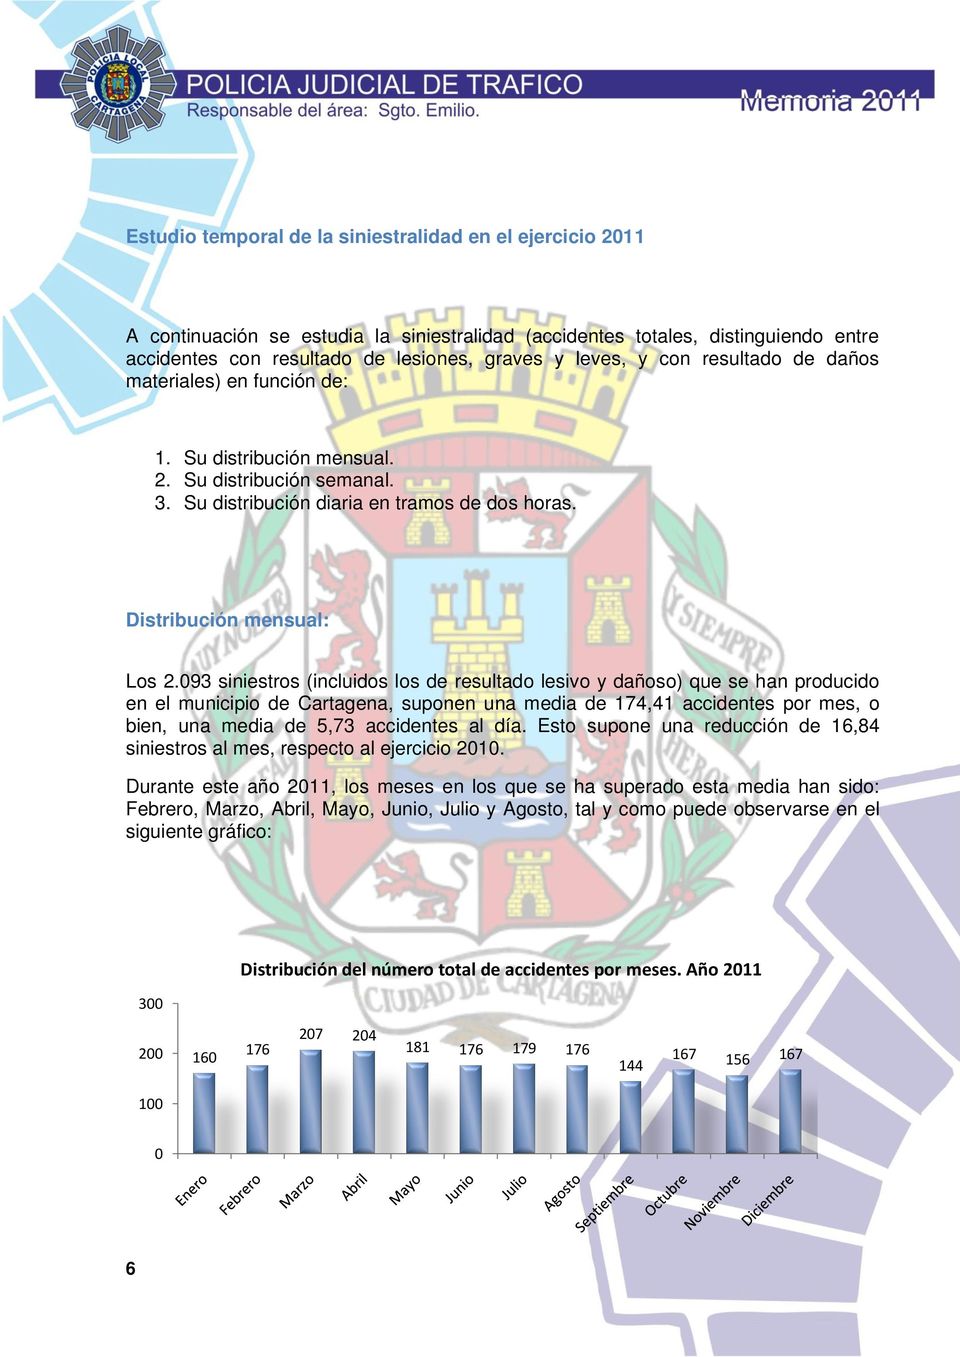 093 siniestros (incluidos los de resultado lesivo y dañoso) que se han producido en el municipio de Cartagena, suponen una media de 174,41 accidentes por mes, o bien, una media de 5,73 accidentes al